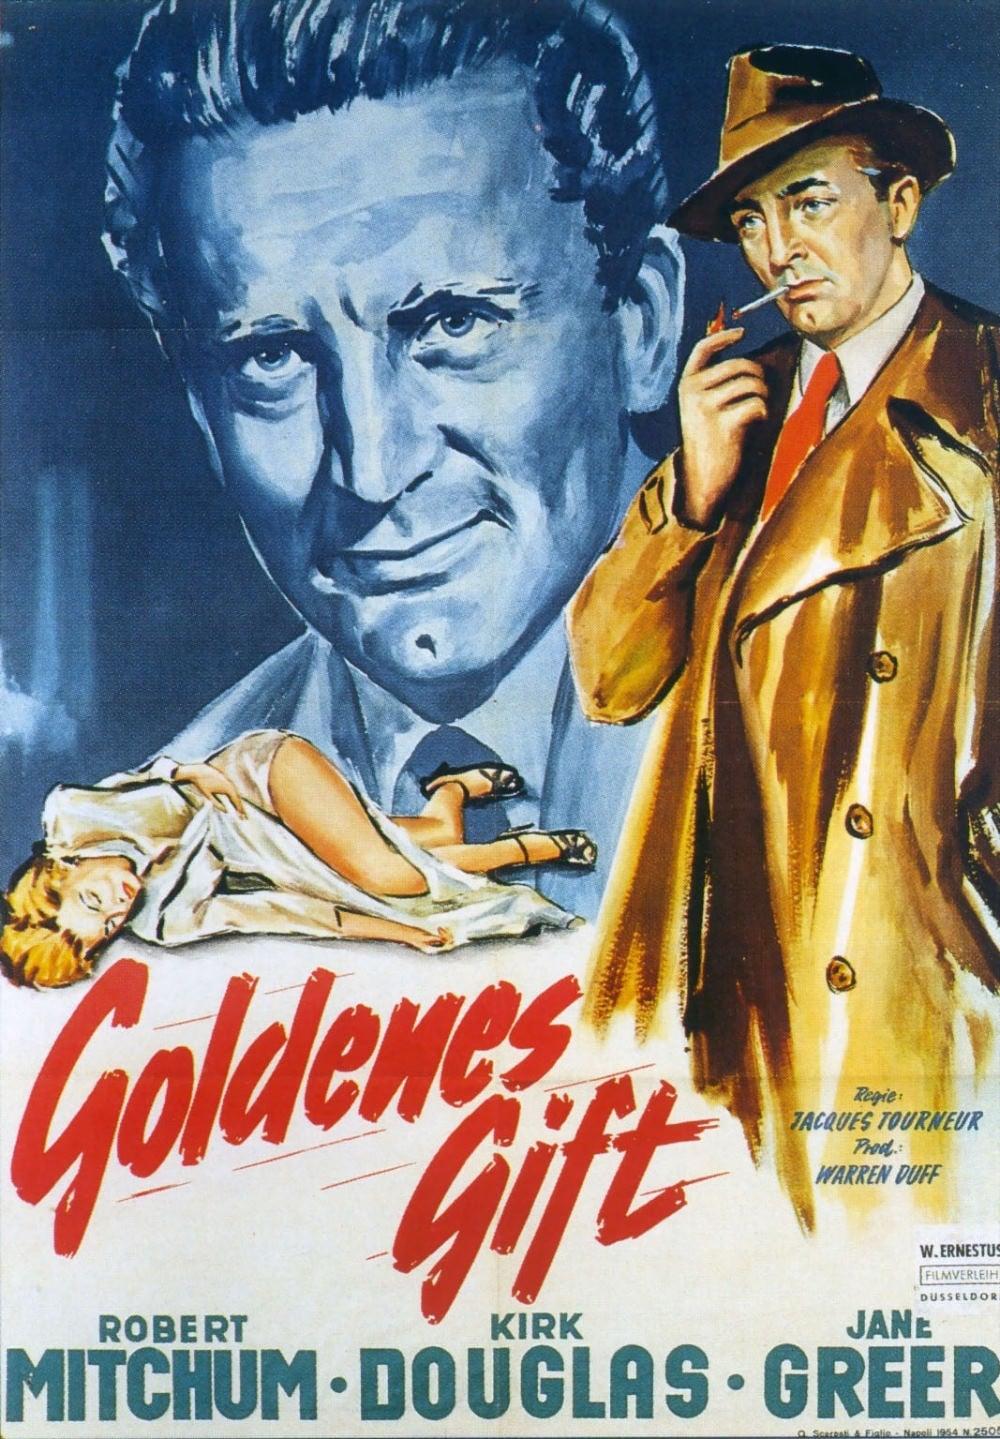 Goldenes Gift poster